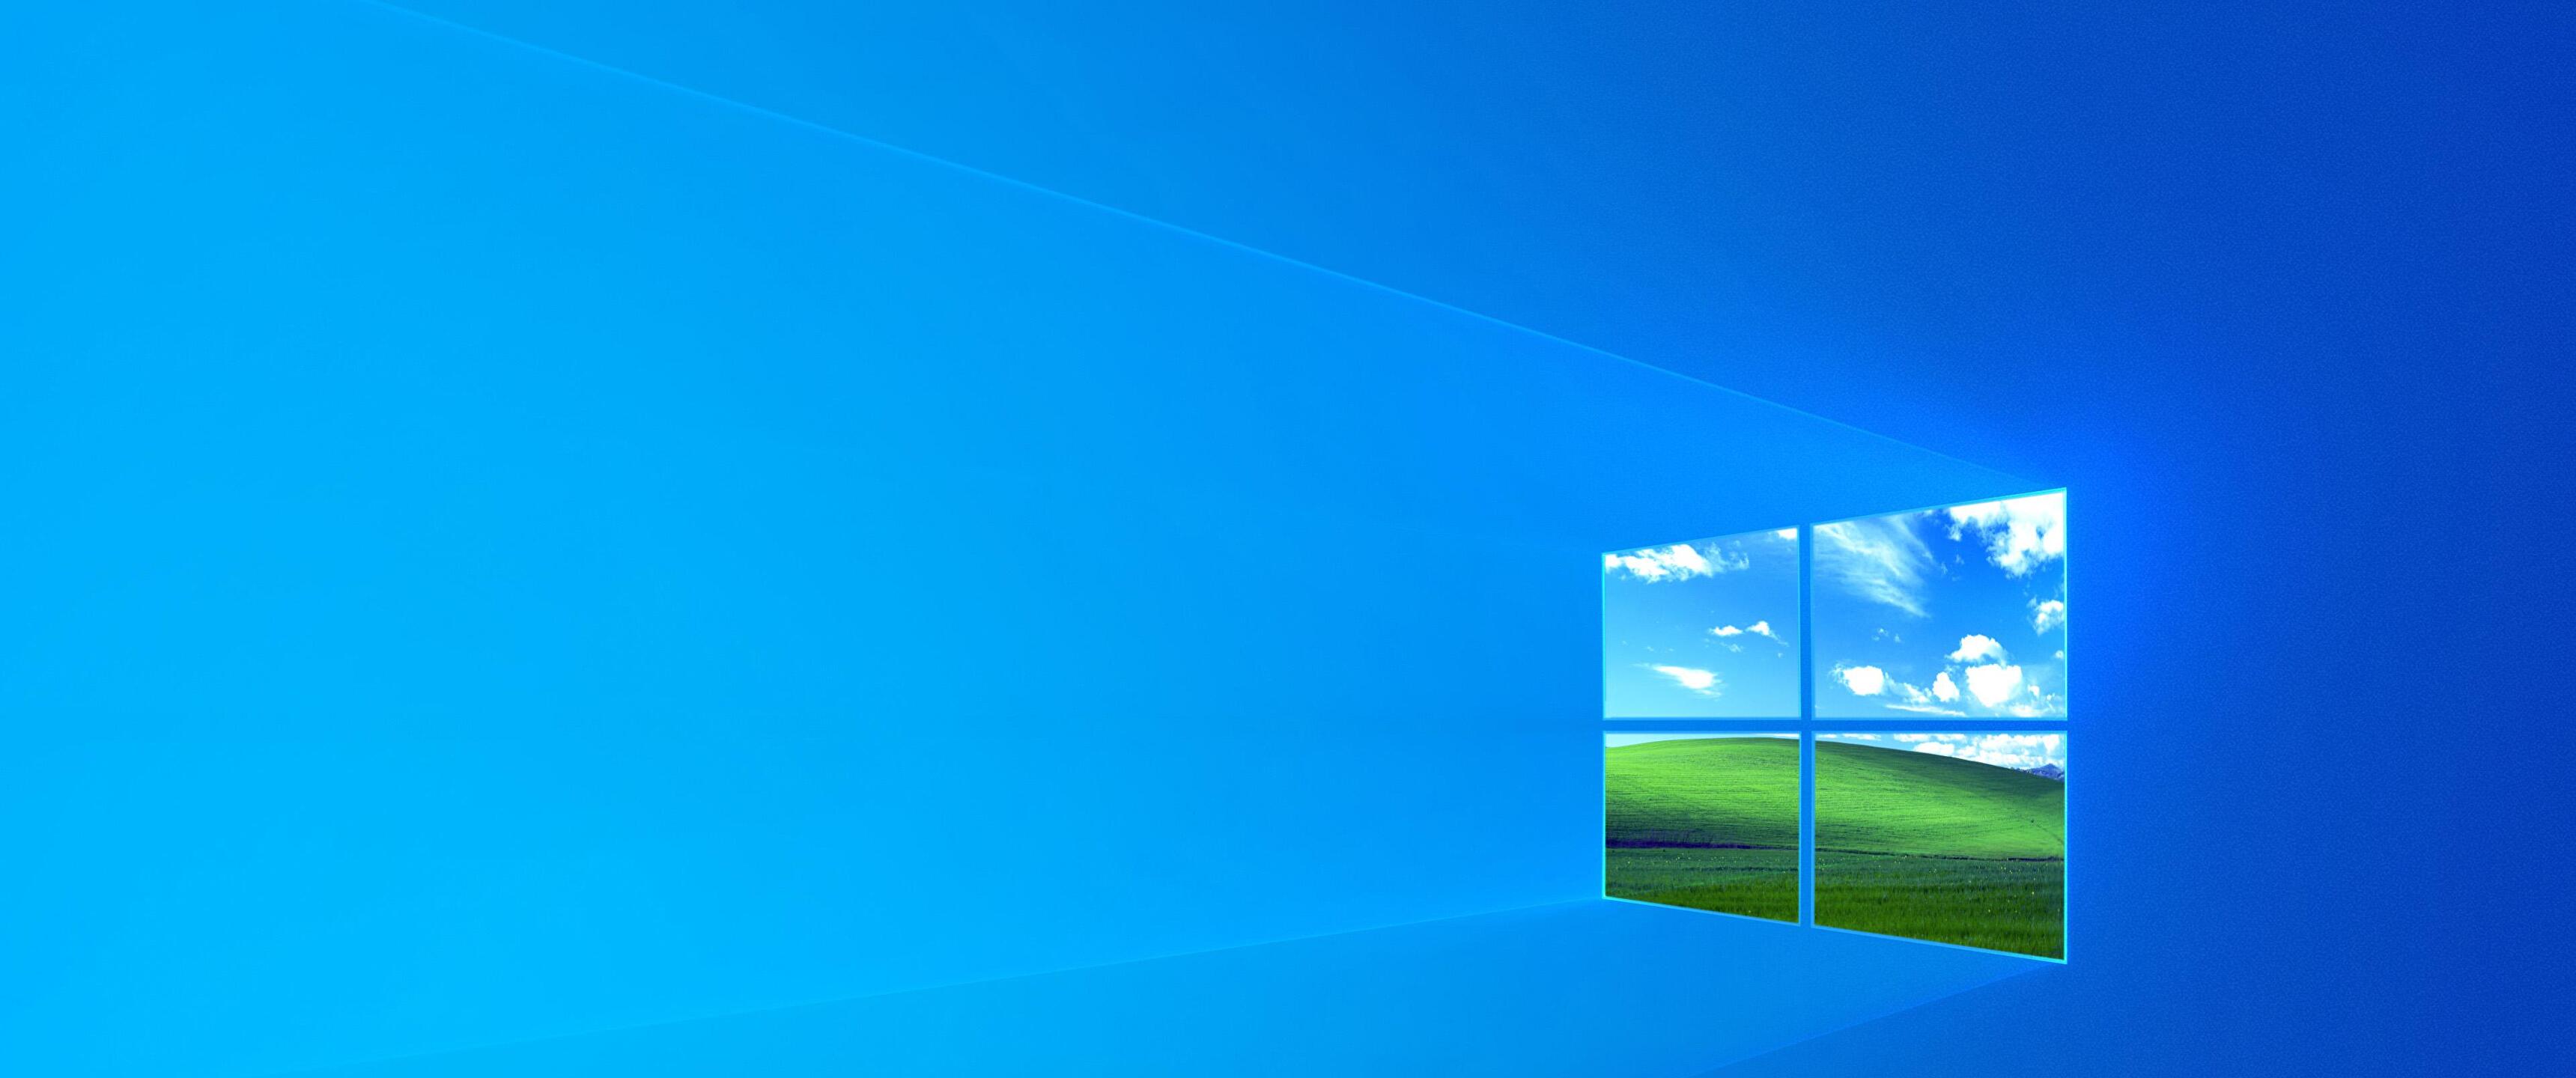 Windows 10 1903 Default Wallpapers